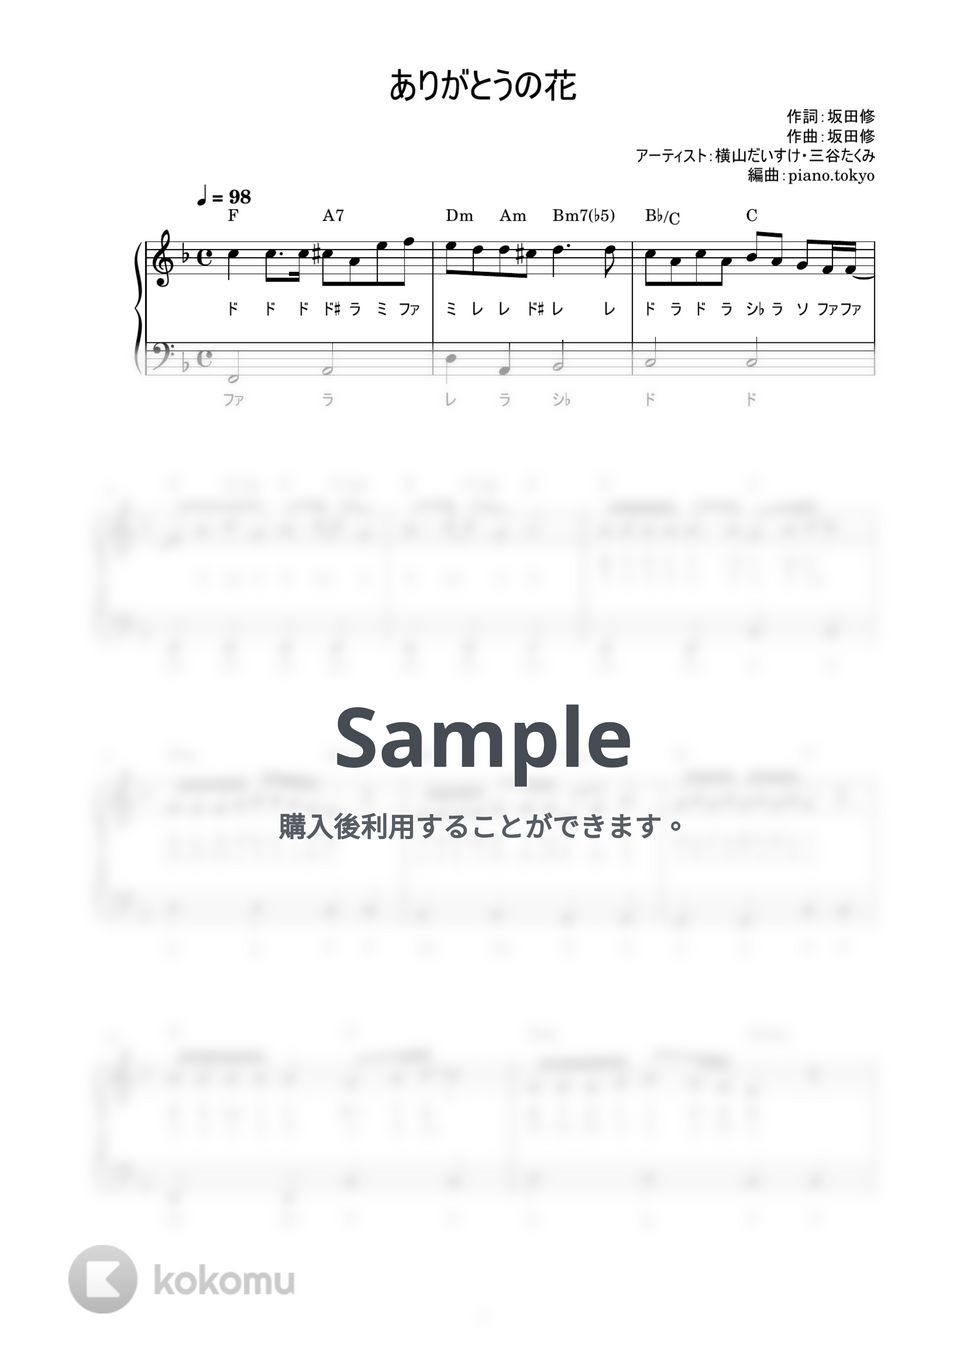 ありがとうの花 (かんたん / 歌詞付き / ドレミ付き / 初心者) by piano.tokyo